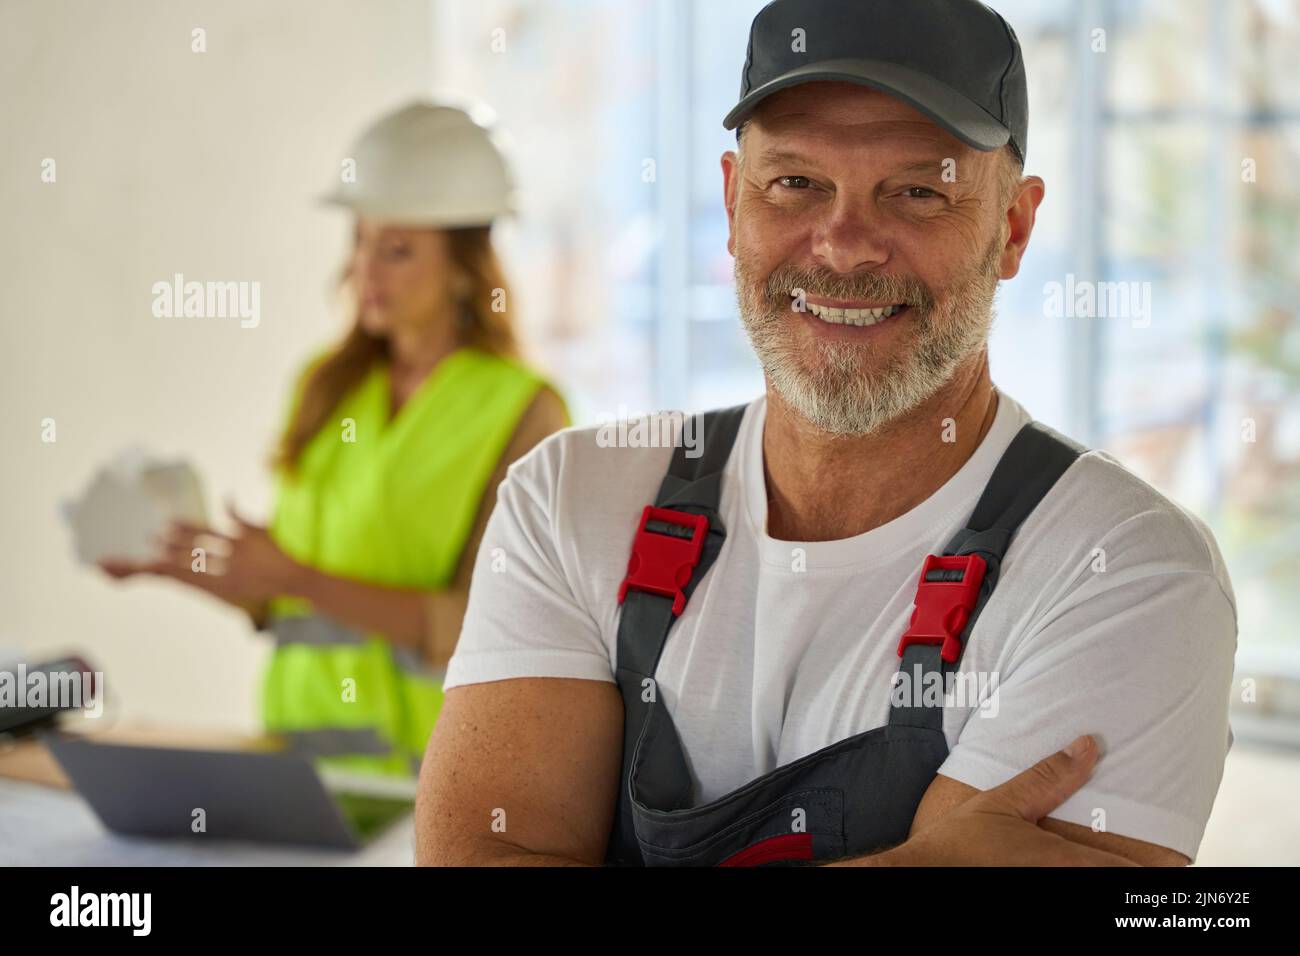 Retrato del constructor sonriente. Detrás está el agente inmobiliario que sostiene la casa modelo Foto de stock